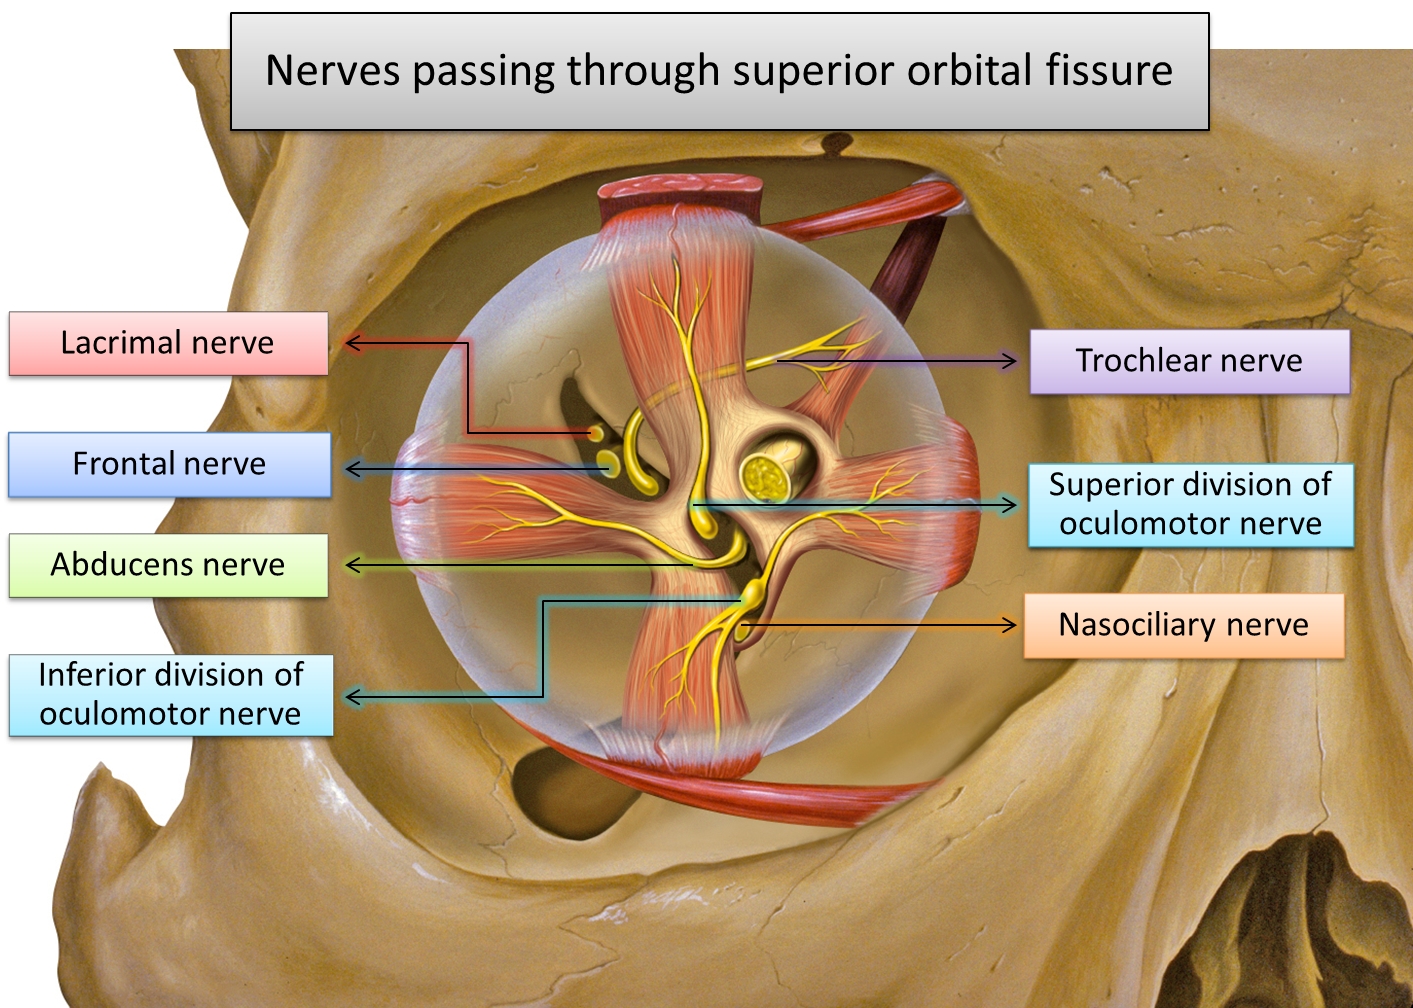 Nerves passing through superior orbital fissure2